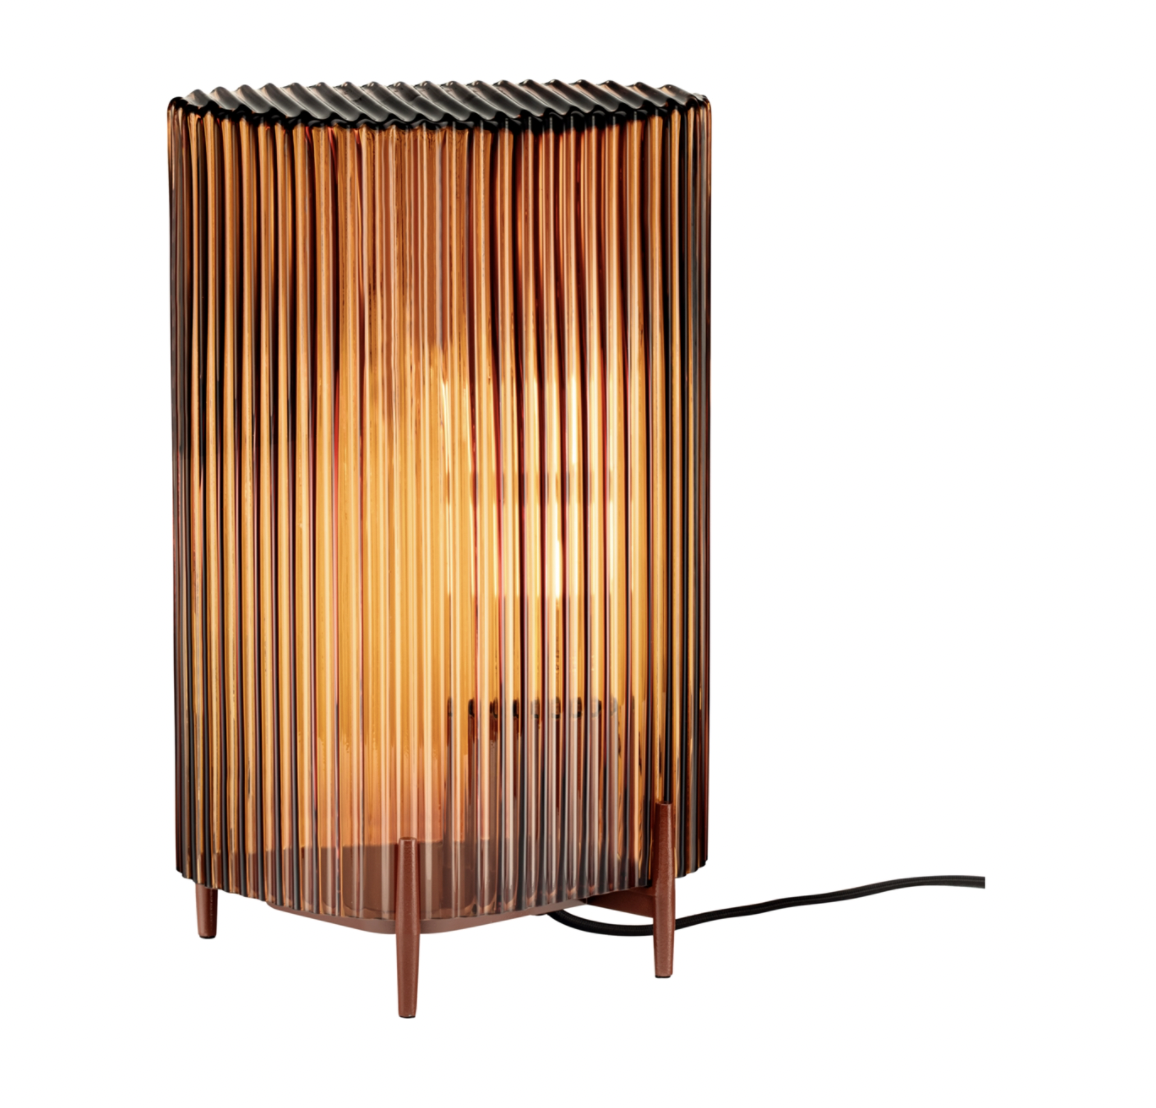 Theseus Aanvankelijk Nylon Iittala lamp Putki koper | design verlichting | Groen+Akker - Groen+Akker